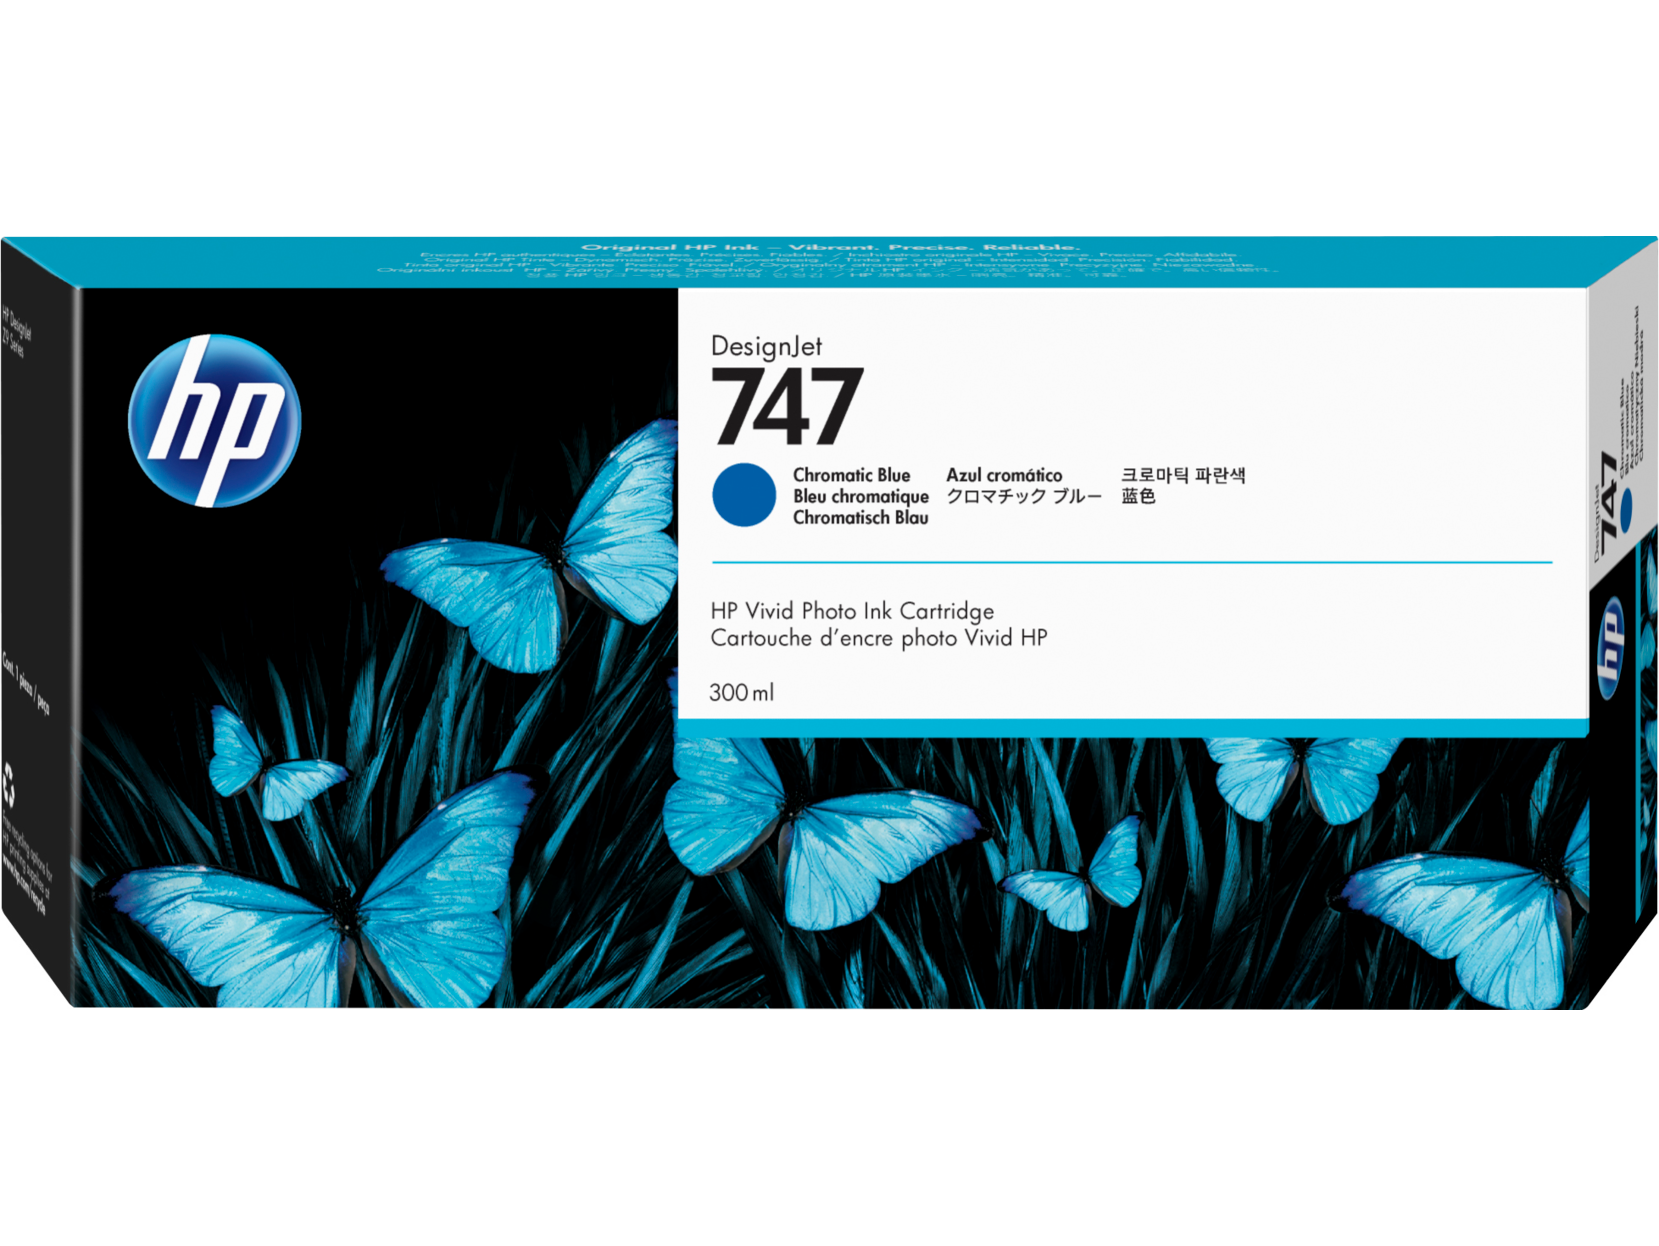 Картридж для печати HP Картридж HP 747 P2V85A вид печати струйный, цвет Хроматический синий, емкость 300мл.